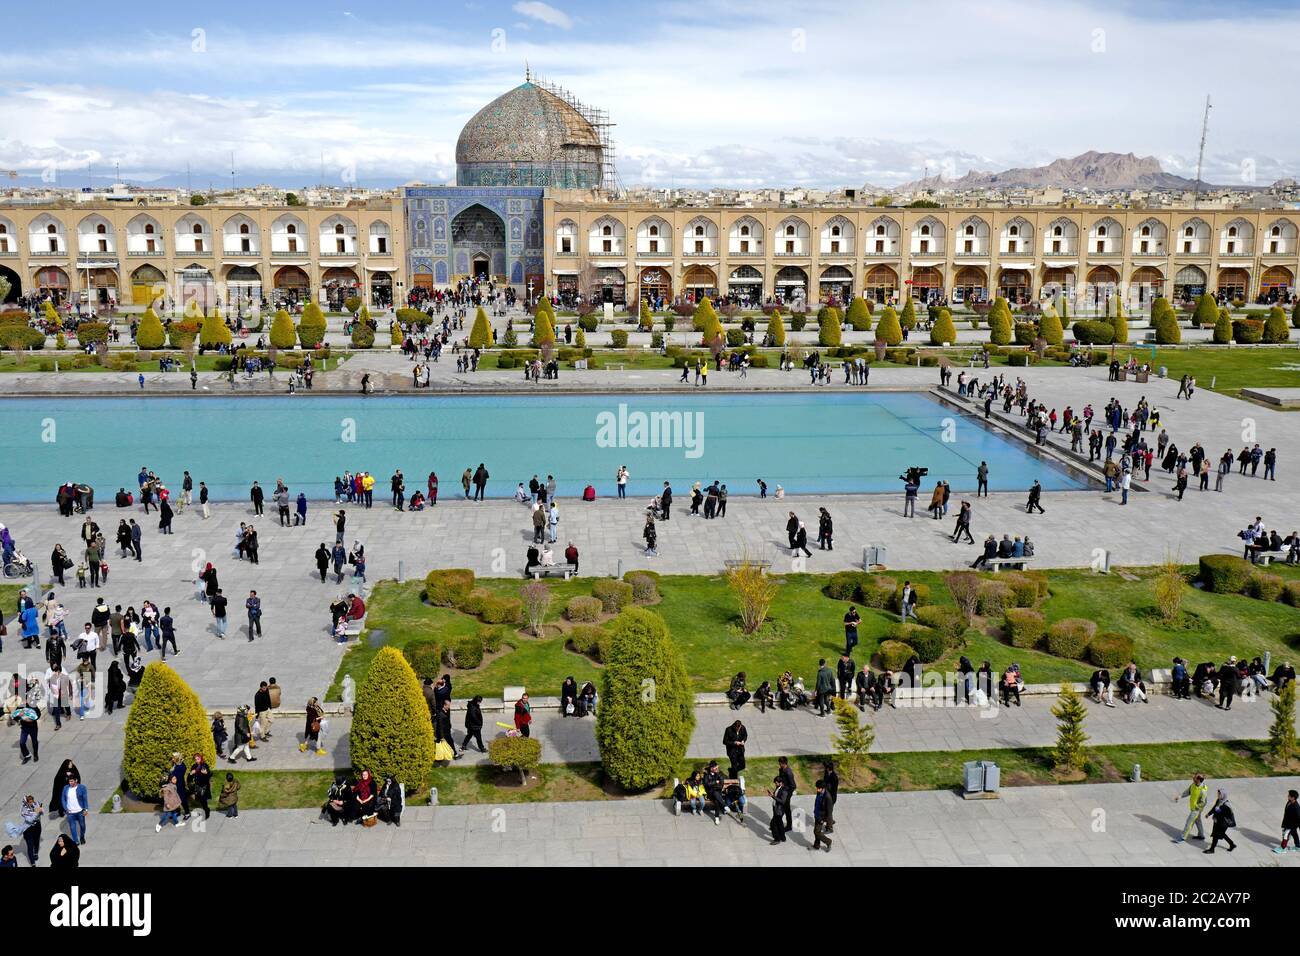 Vue panoramique sur la place Naqsh-e Jahan, avec sa fontaine jardin.Palace, à Esfahan, Iran Banque D'Images